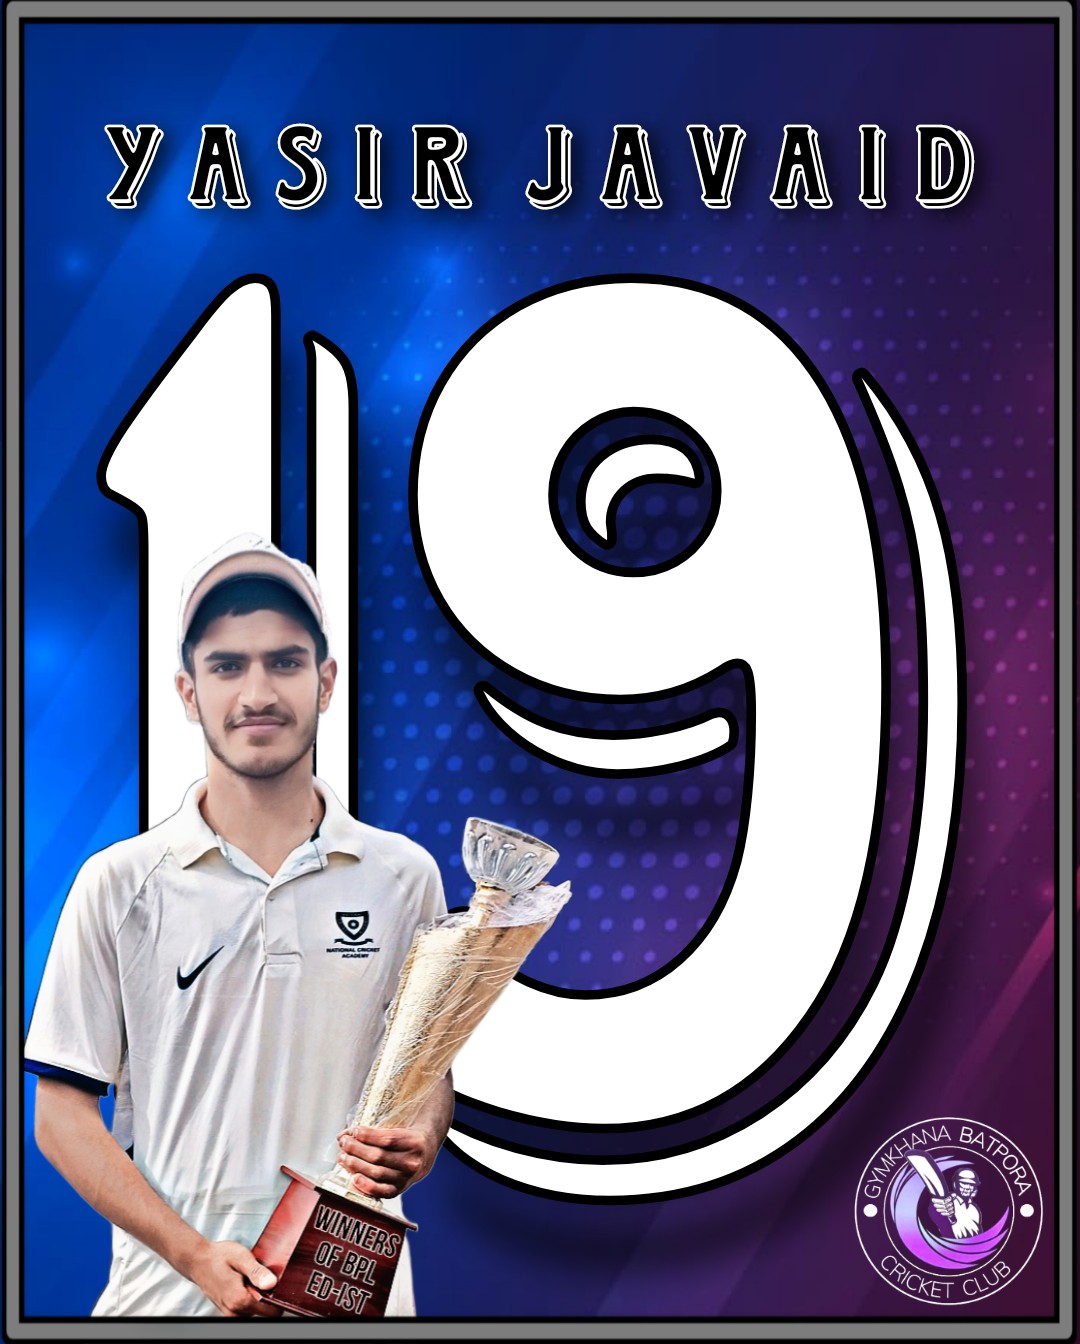 Yasir Javaid